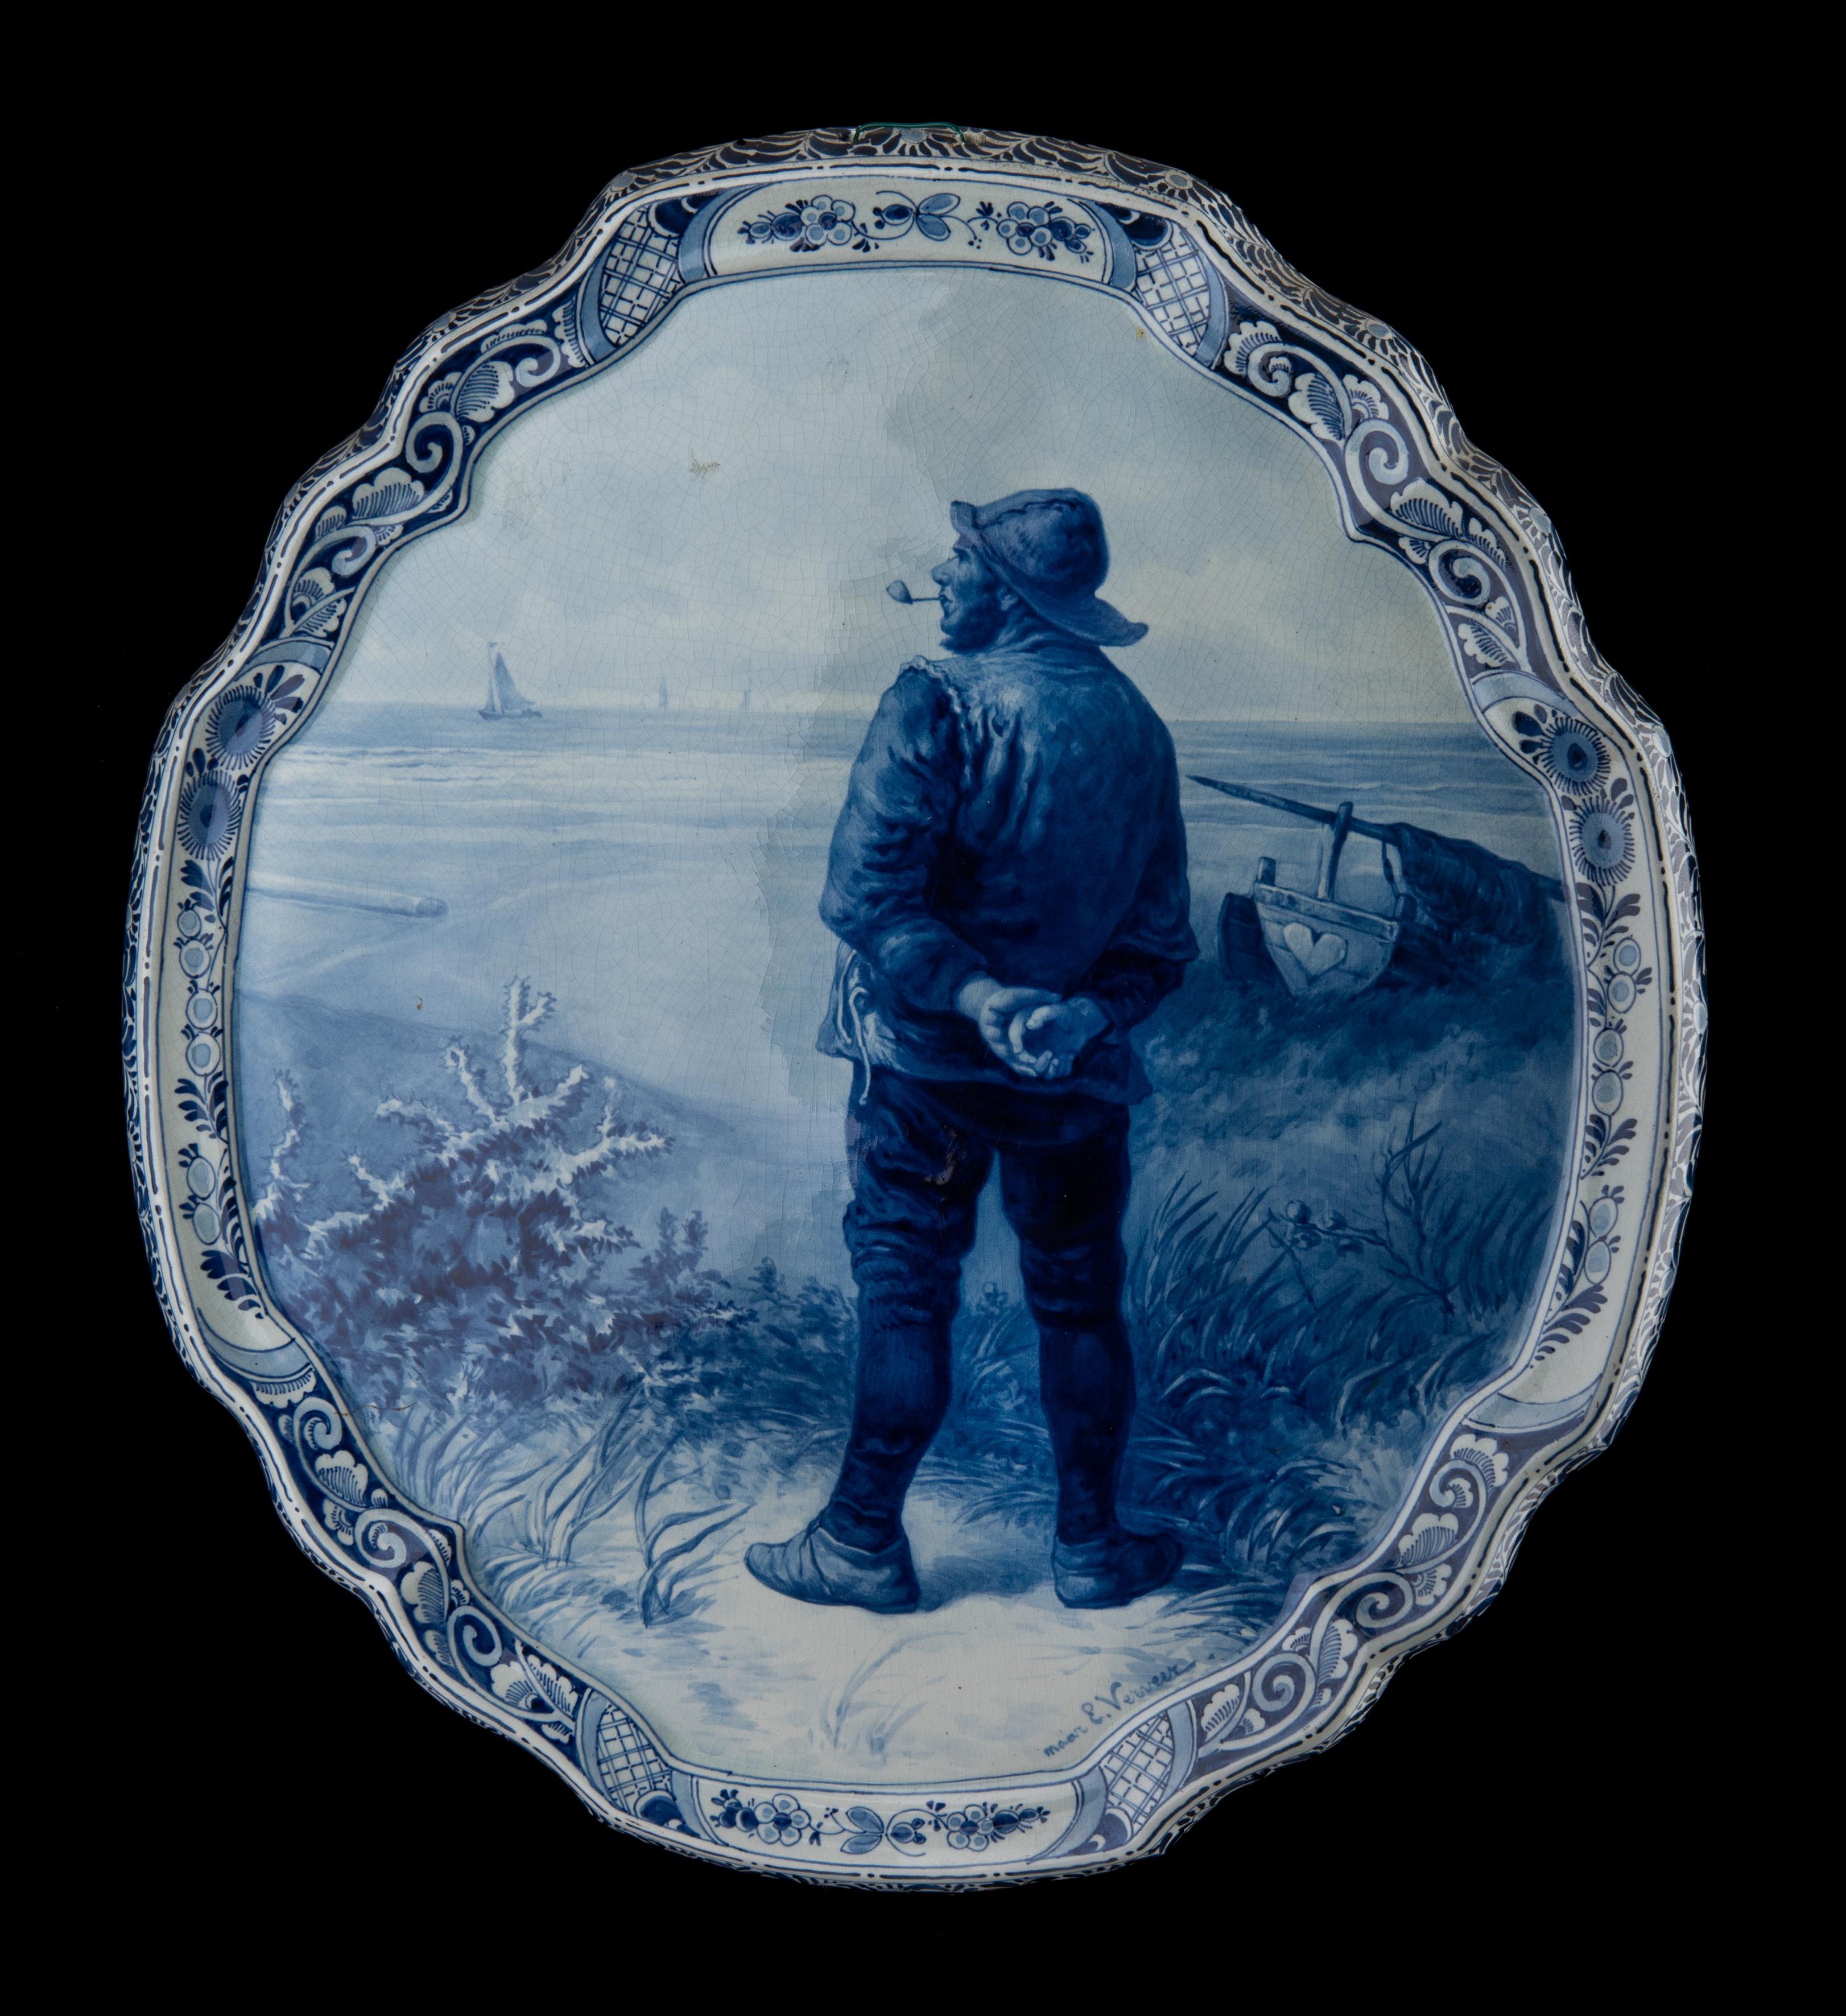 Delft, Porceleyne Fles Applique nach einem Gemälde von E. Verveer,  hergestellt 1903

Eine Porceleyne Fles Delft handgemalte Applikation nach einem Gemälde von Elchanon Leonardus Verveer. . Die Applikation ist in Delftblau ausgeführt und zeigt einen